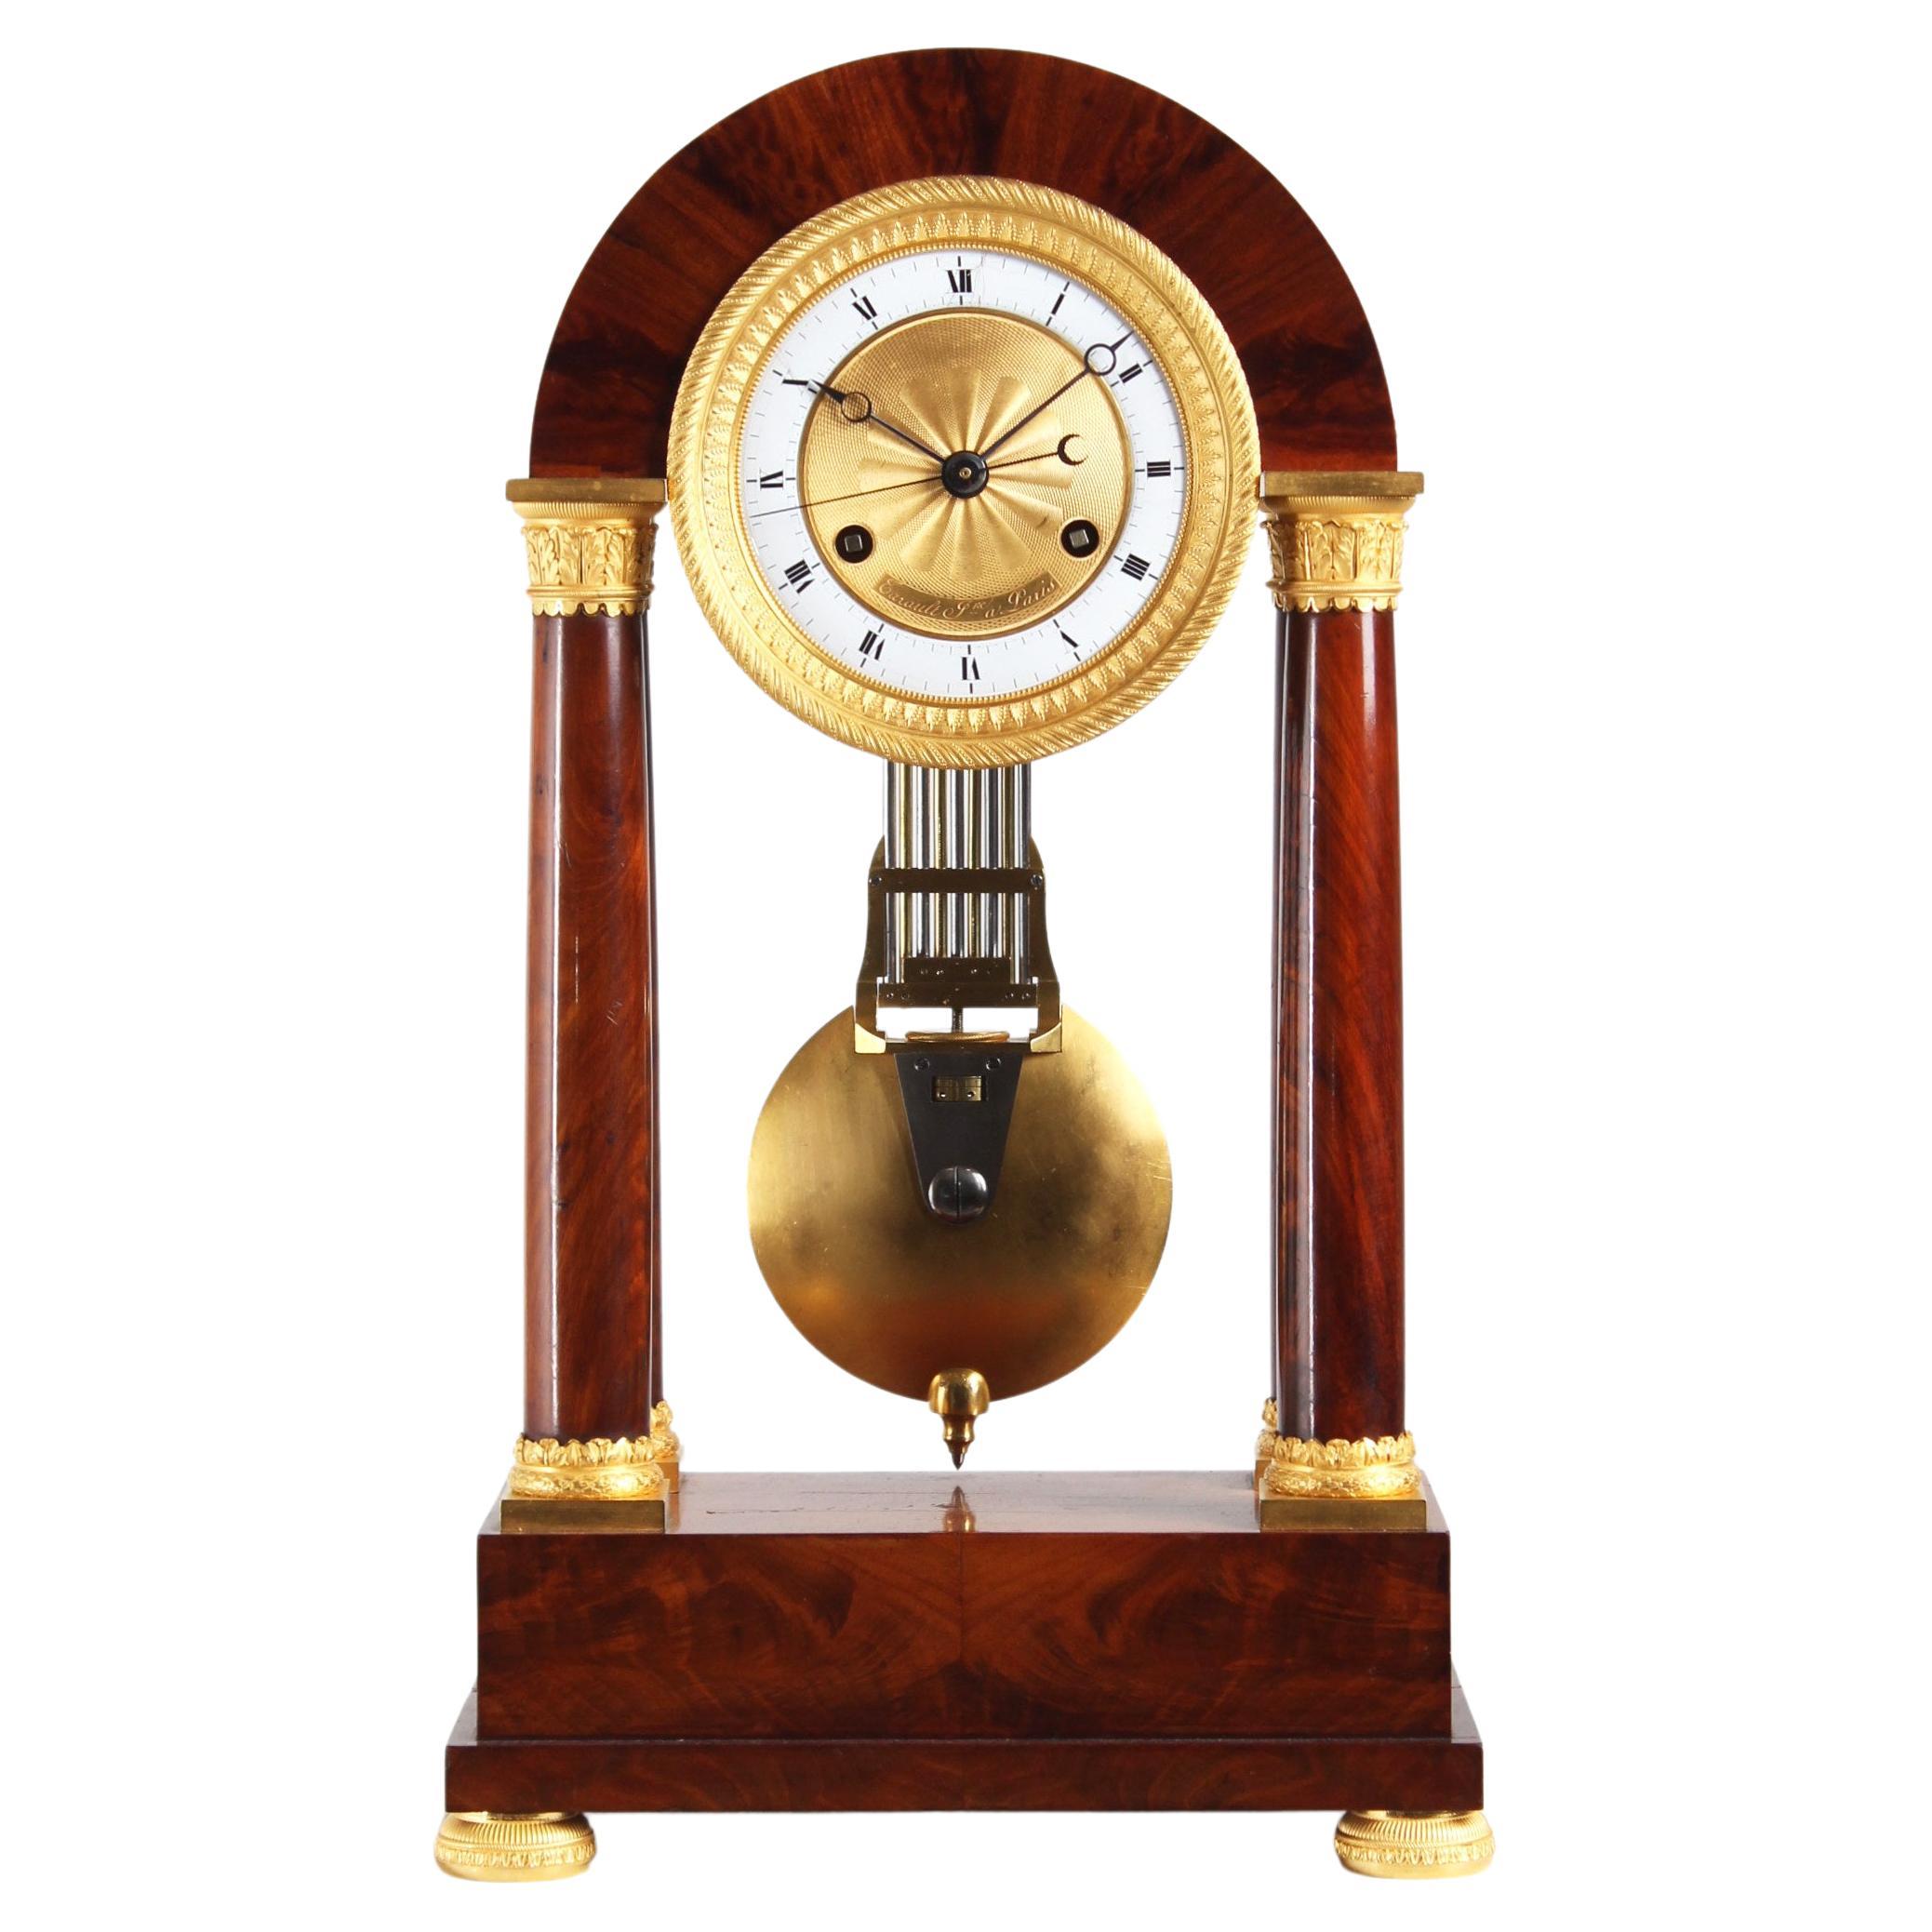 Regulateur du 19e siècle par Tarault Jeune, horloge Precision Portal, Paris, vers 1825